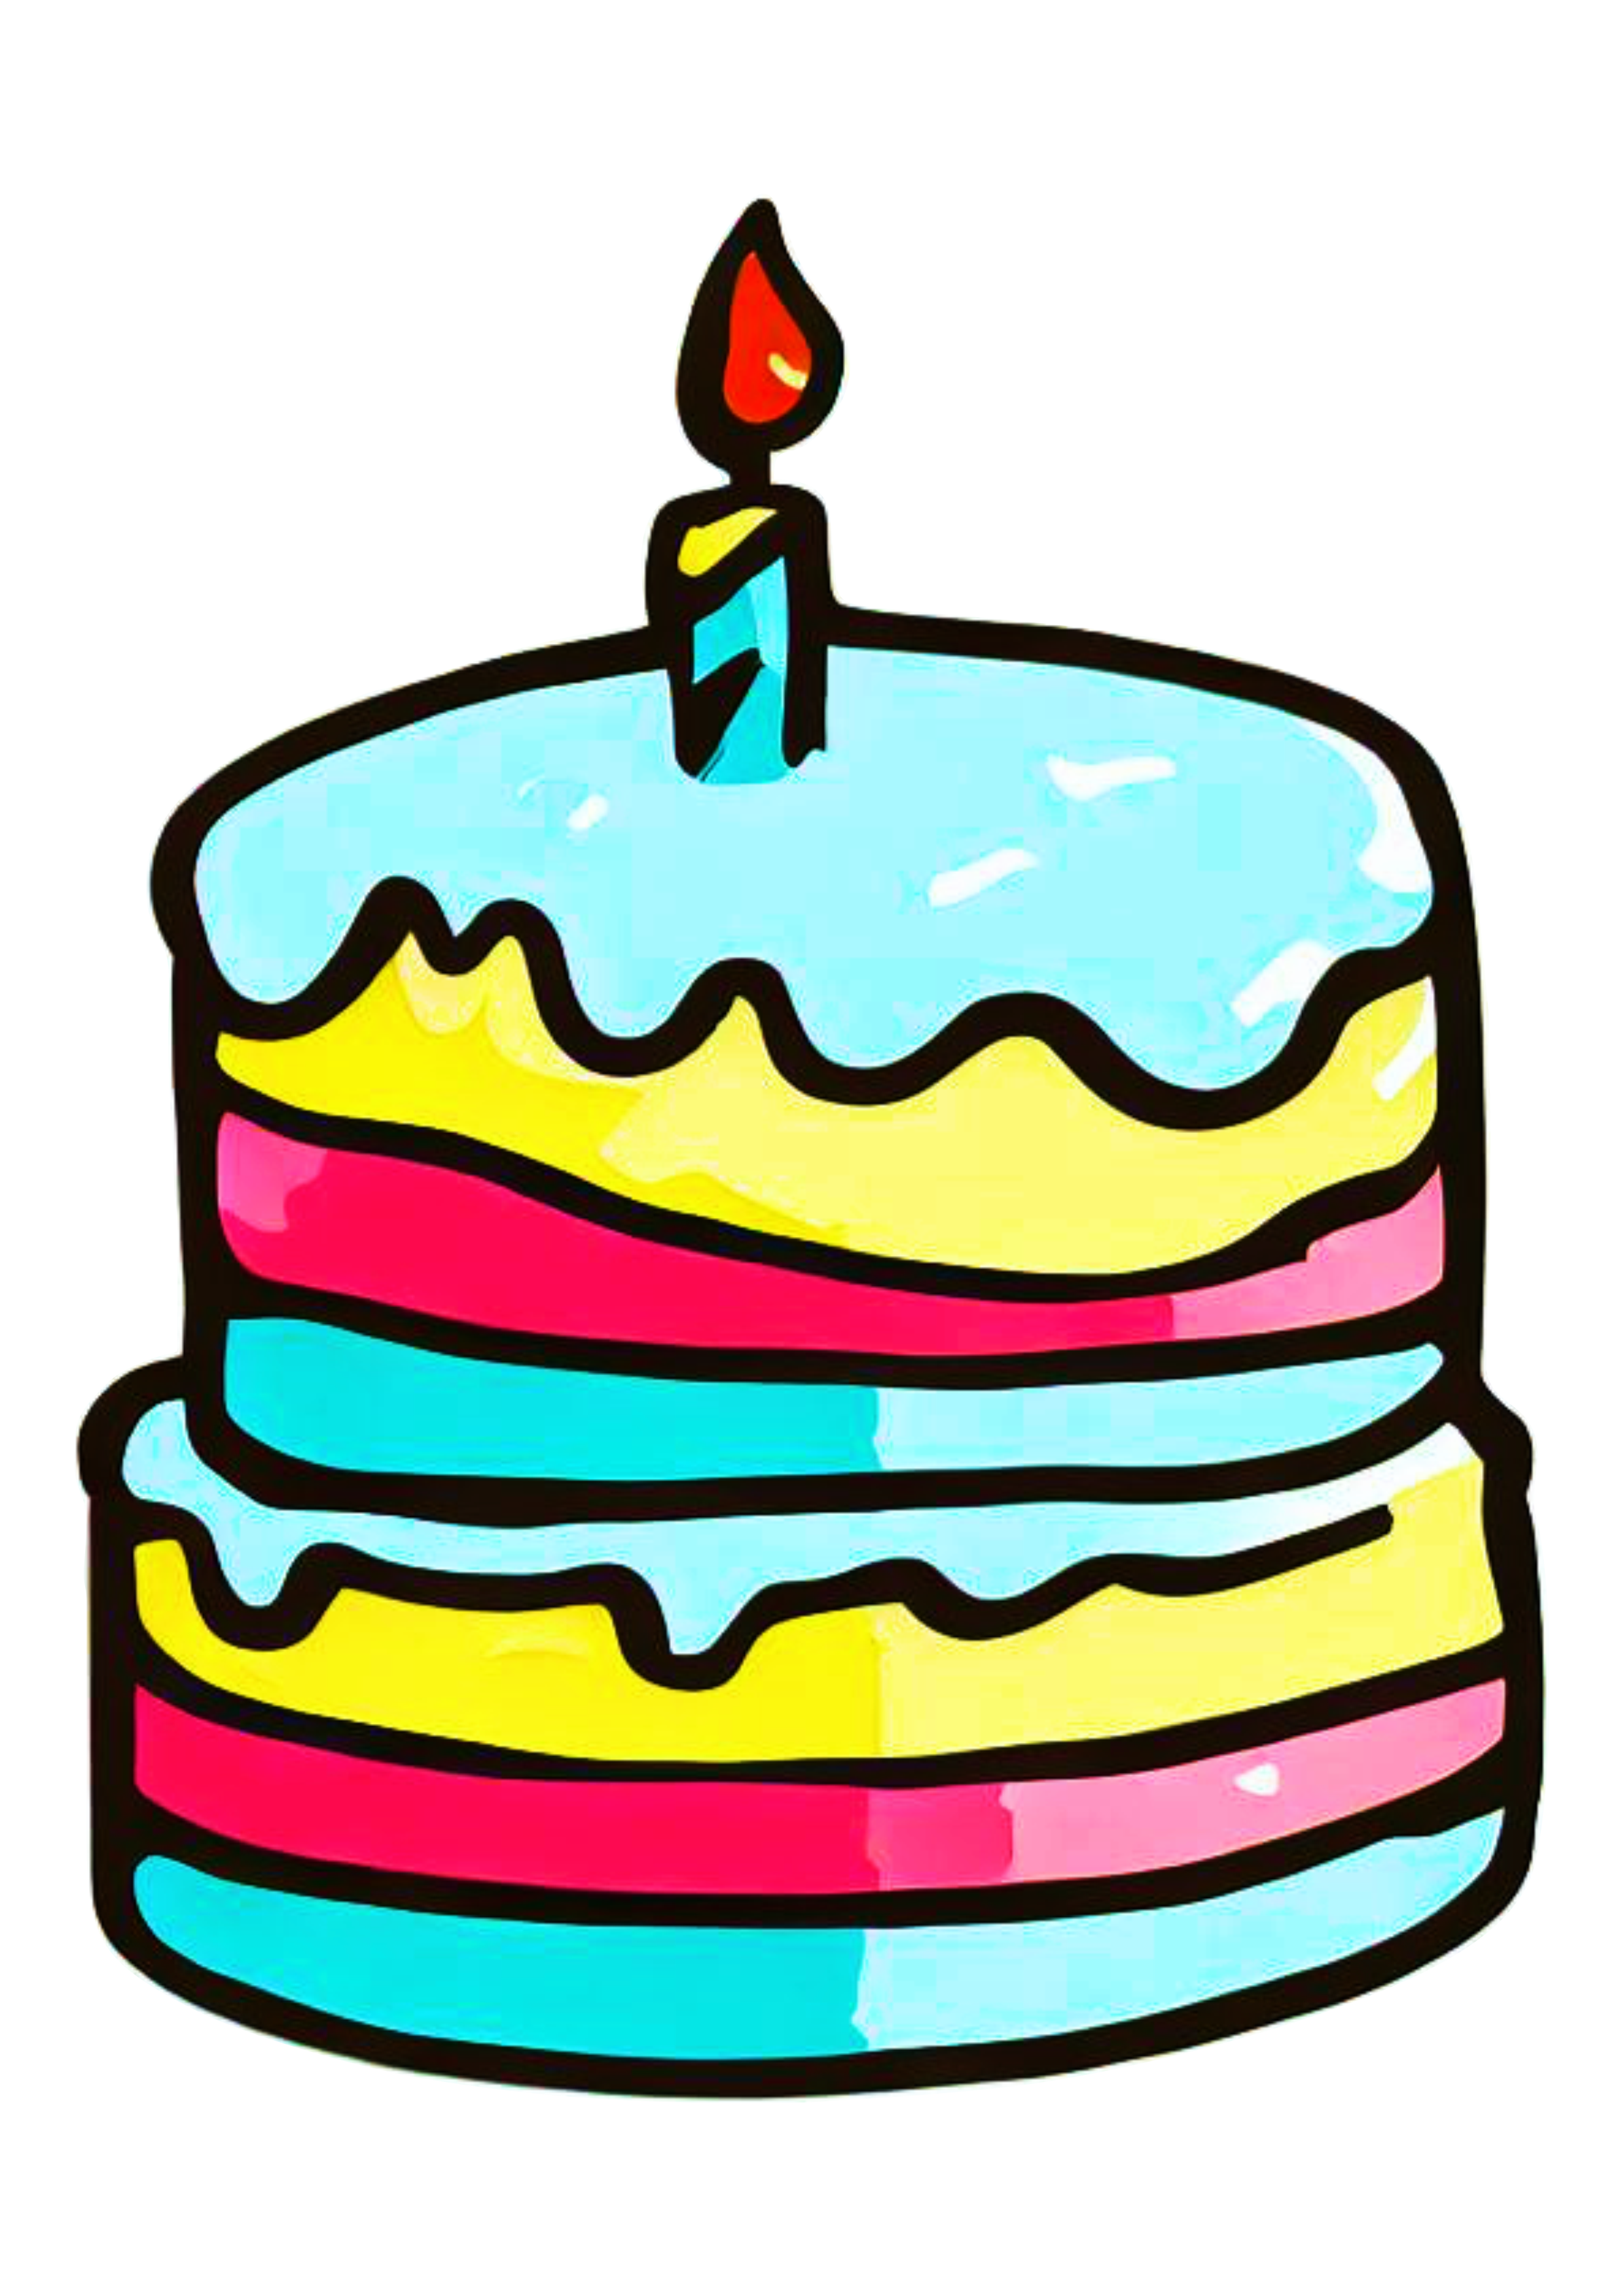 Coleção de bolo de aniversário colorido em ilustração vetorial